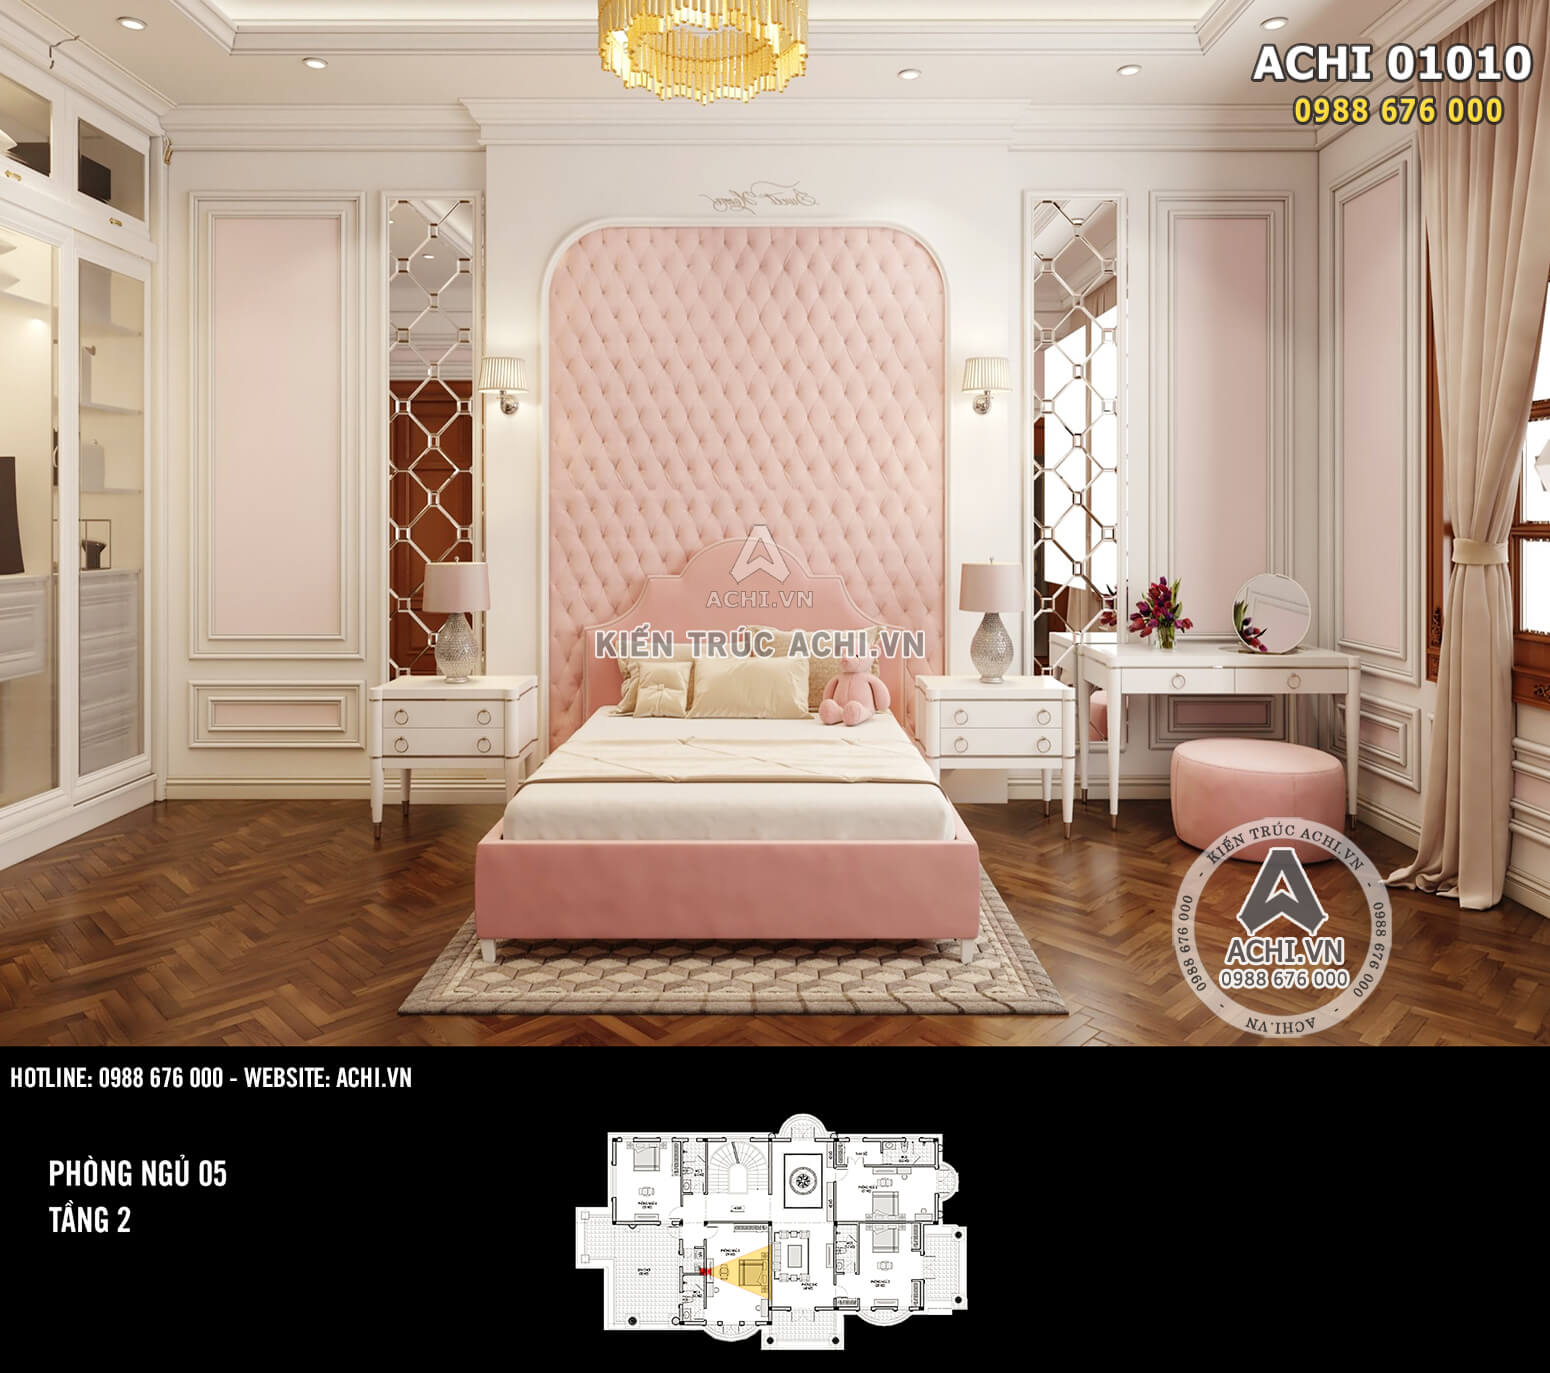 Hình ảnh: Thiết kế nội thất tân cổ điển - Phòng ngủ con gái - 01